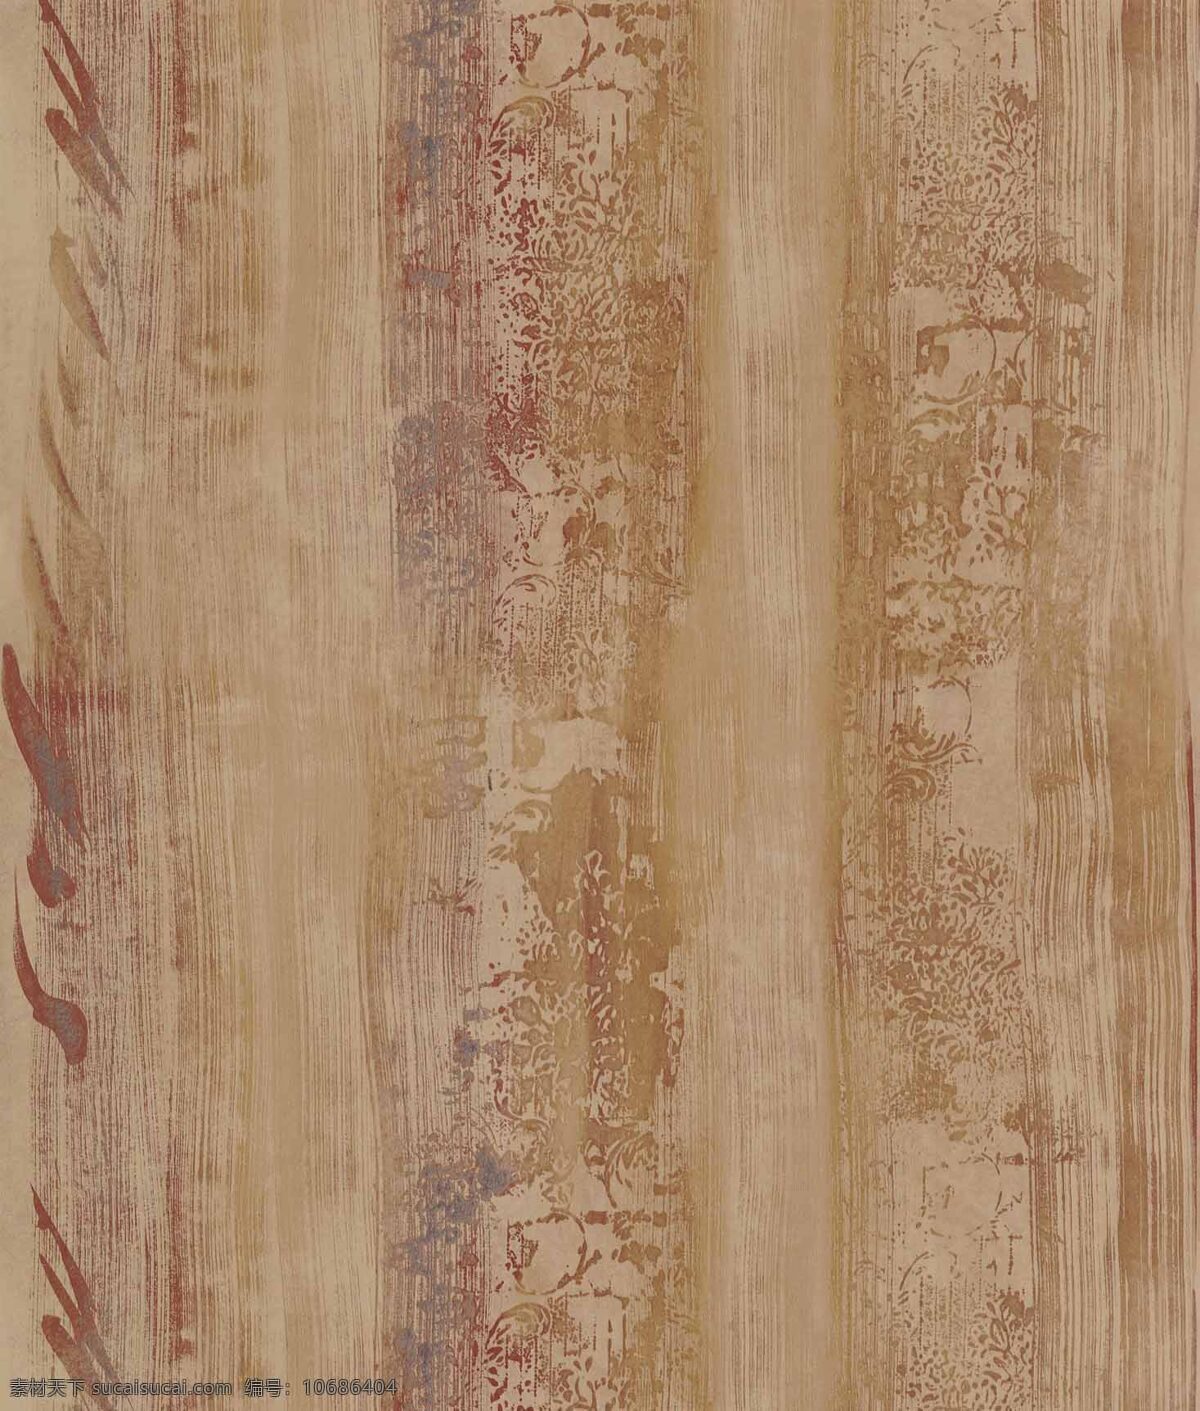 木板纹理 木板 木头板 棕色木板 木板背景 纹理 纹路 材质